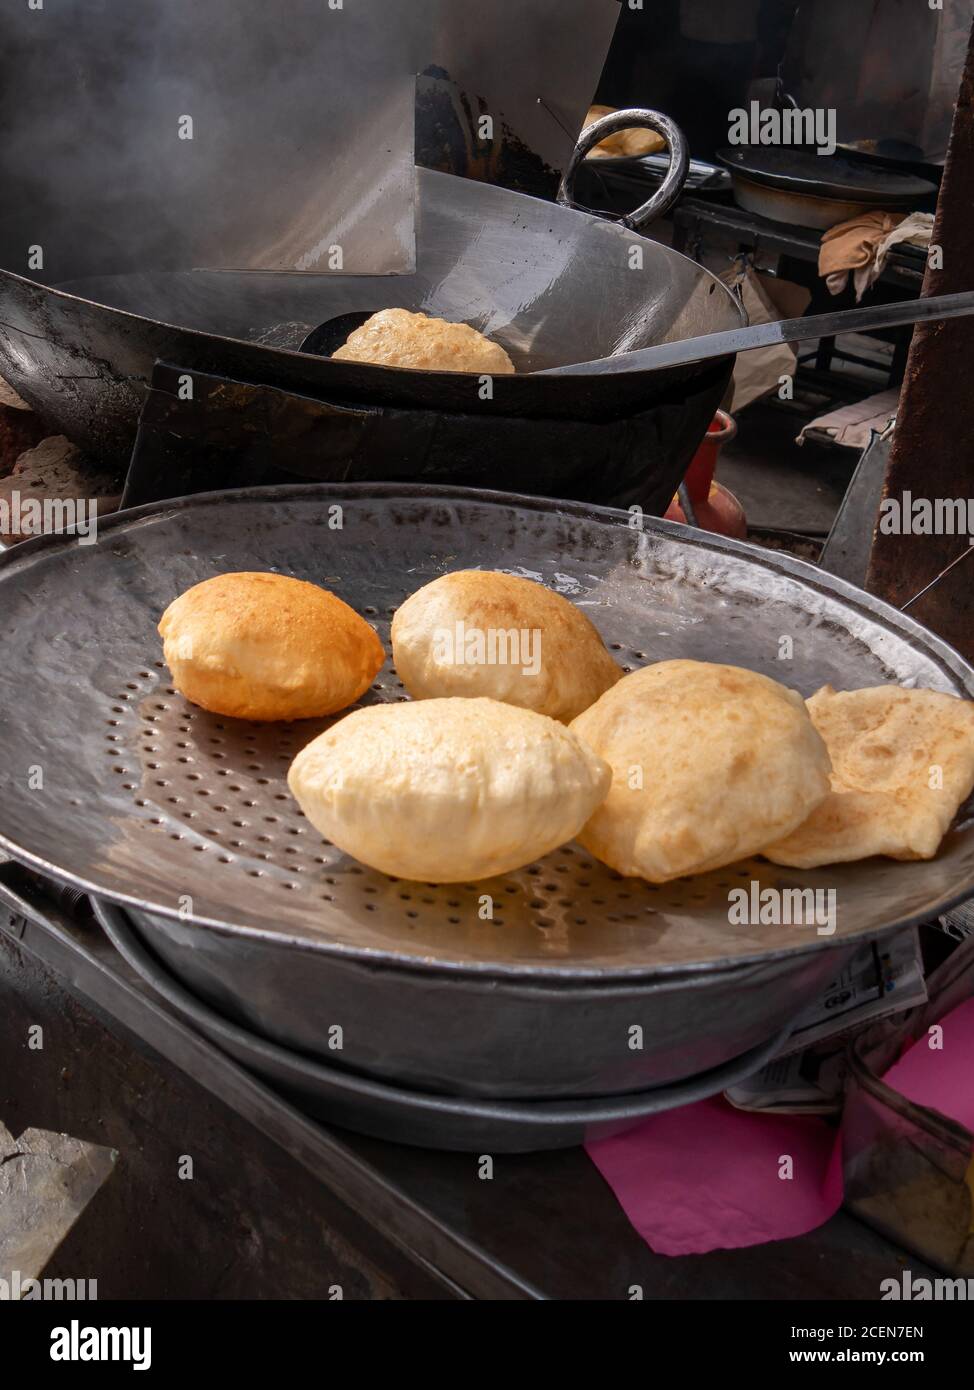 tray with poori bread in amritsar, india Stock Photo